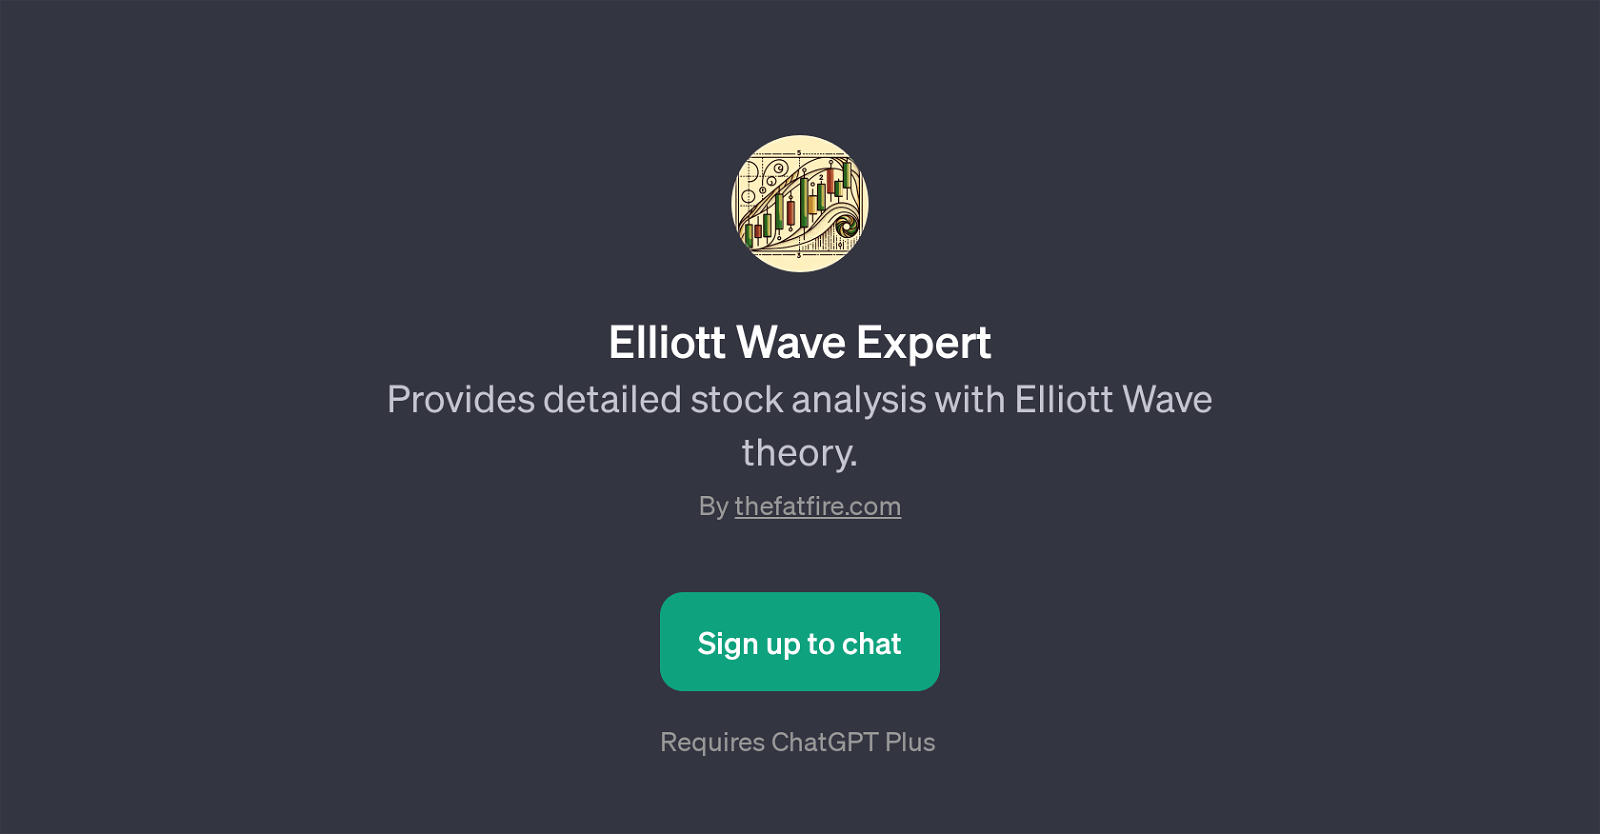 Elliott Wave Expert website